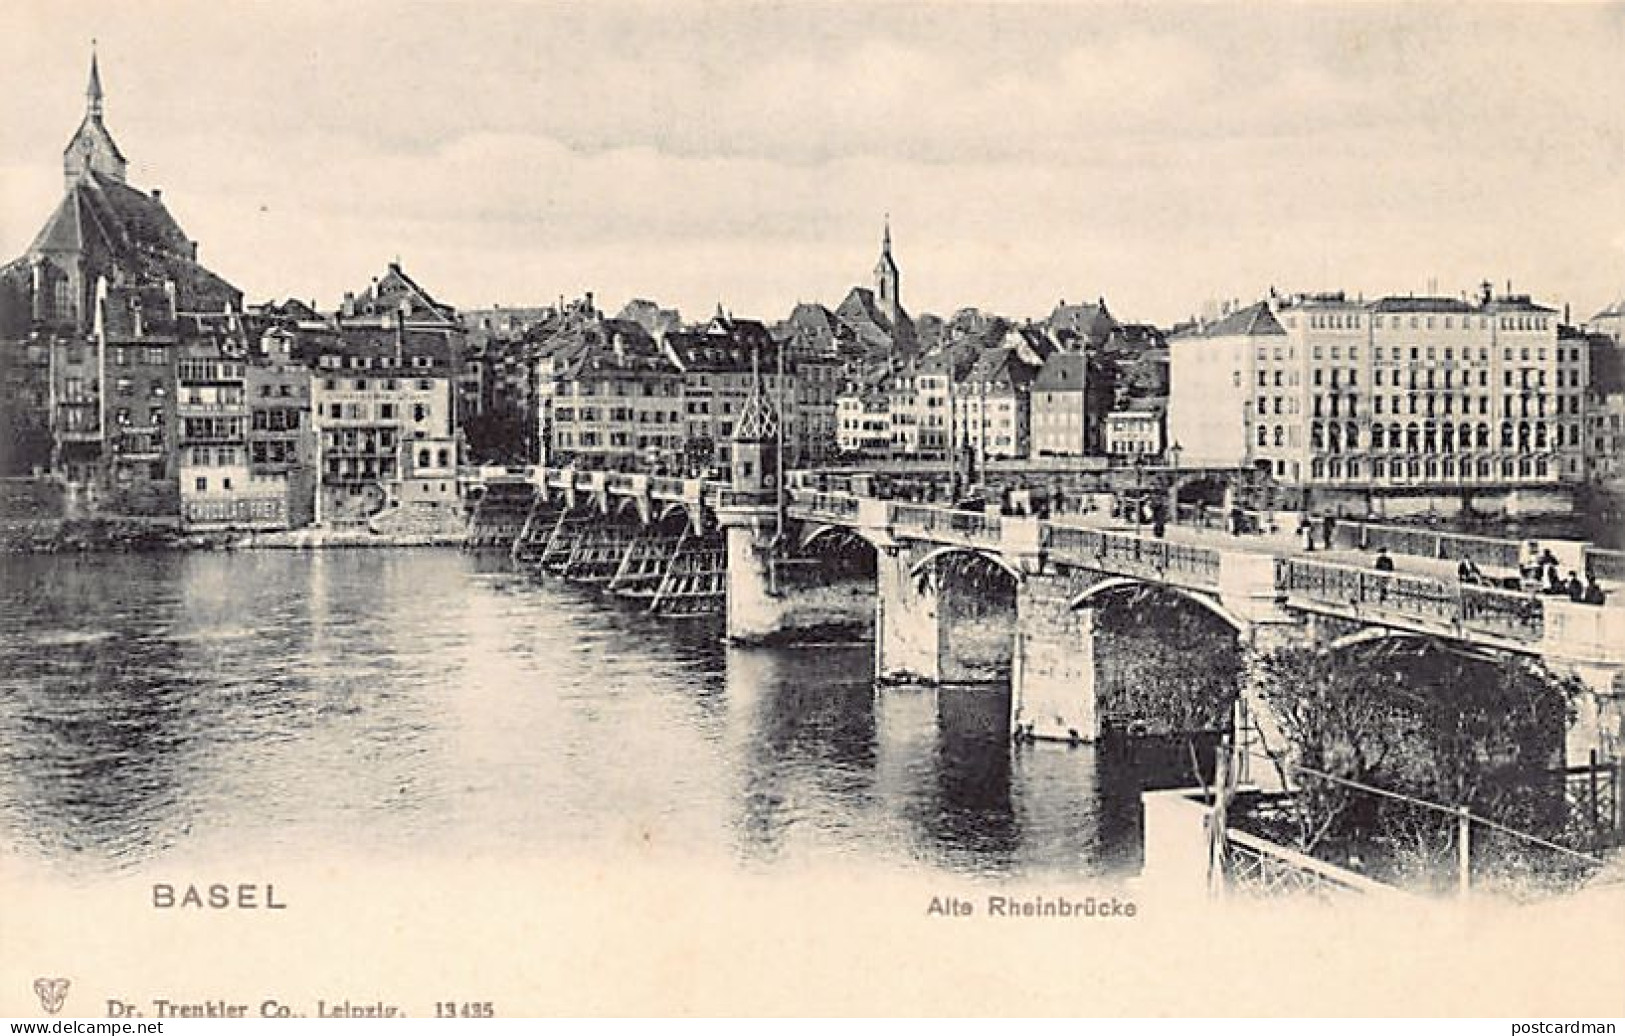 BASEL - Alte Rheinbrücke - Verlag Dr. Trenkler Co. 13435 - Basel